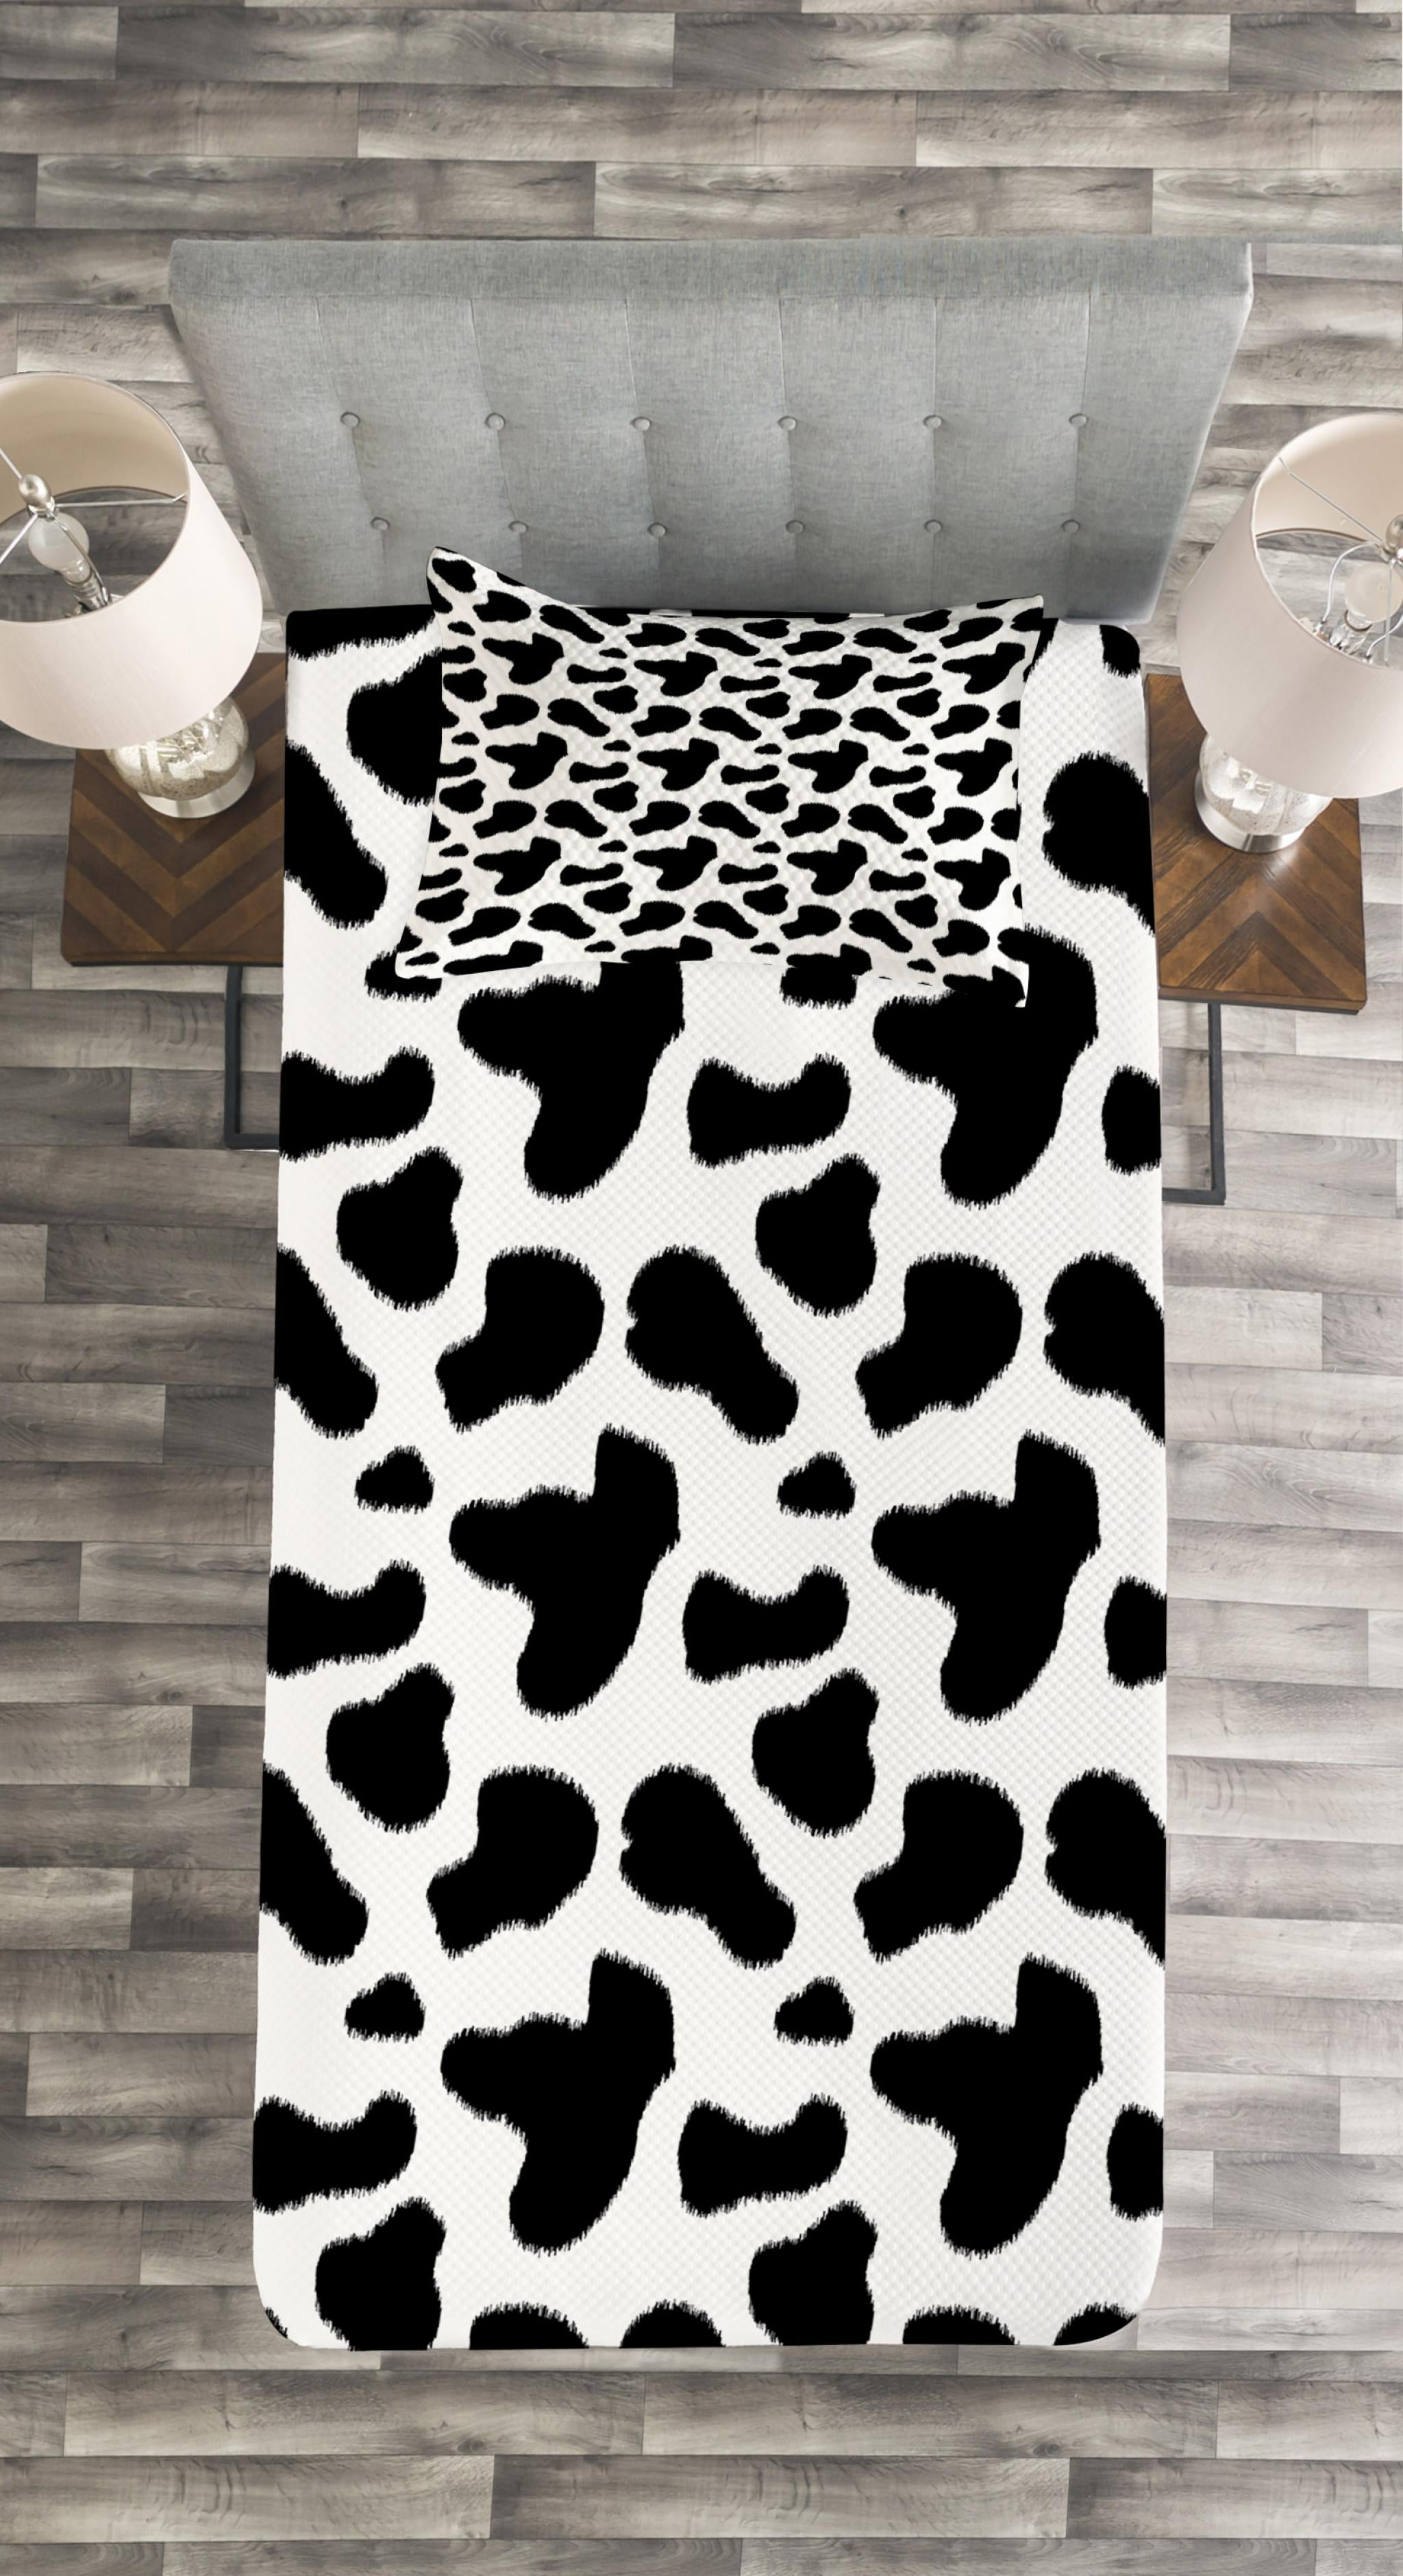 Cow Print Duvet Cover Set Twin Size Decorative 2 Piece Bedding Set